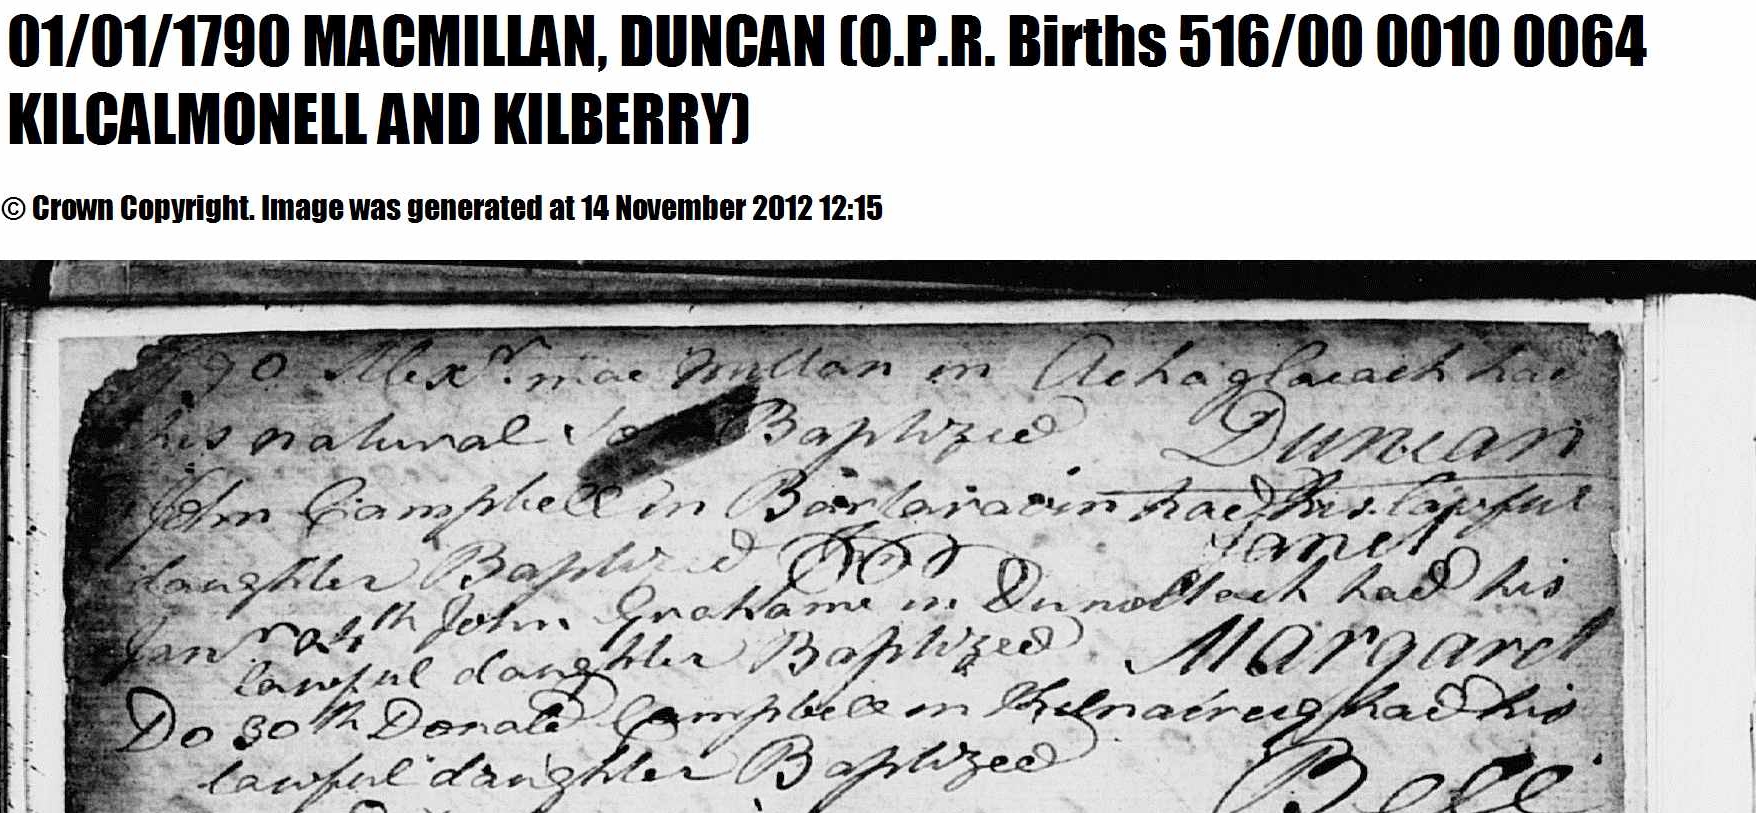 Duncan_McMillan_BirthRecord_1790.JPG